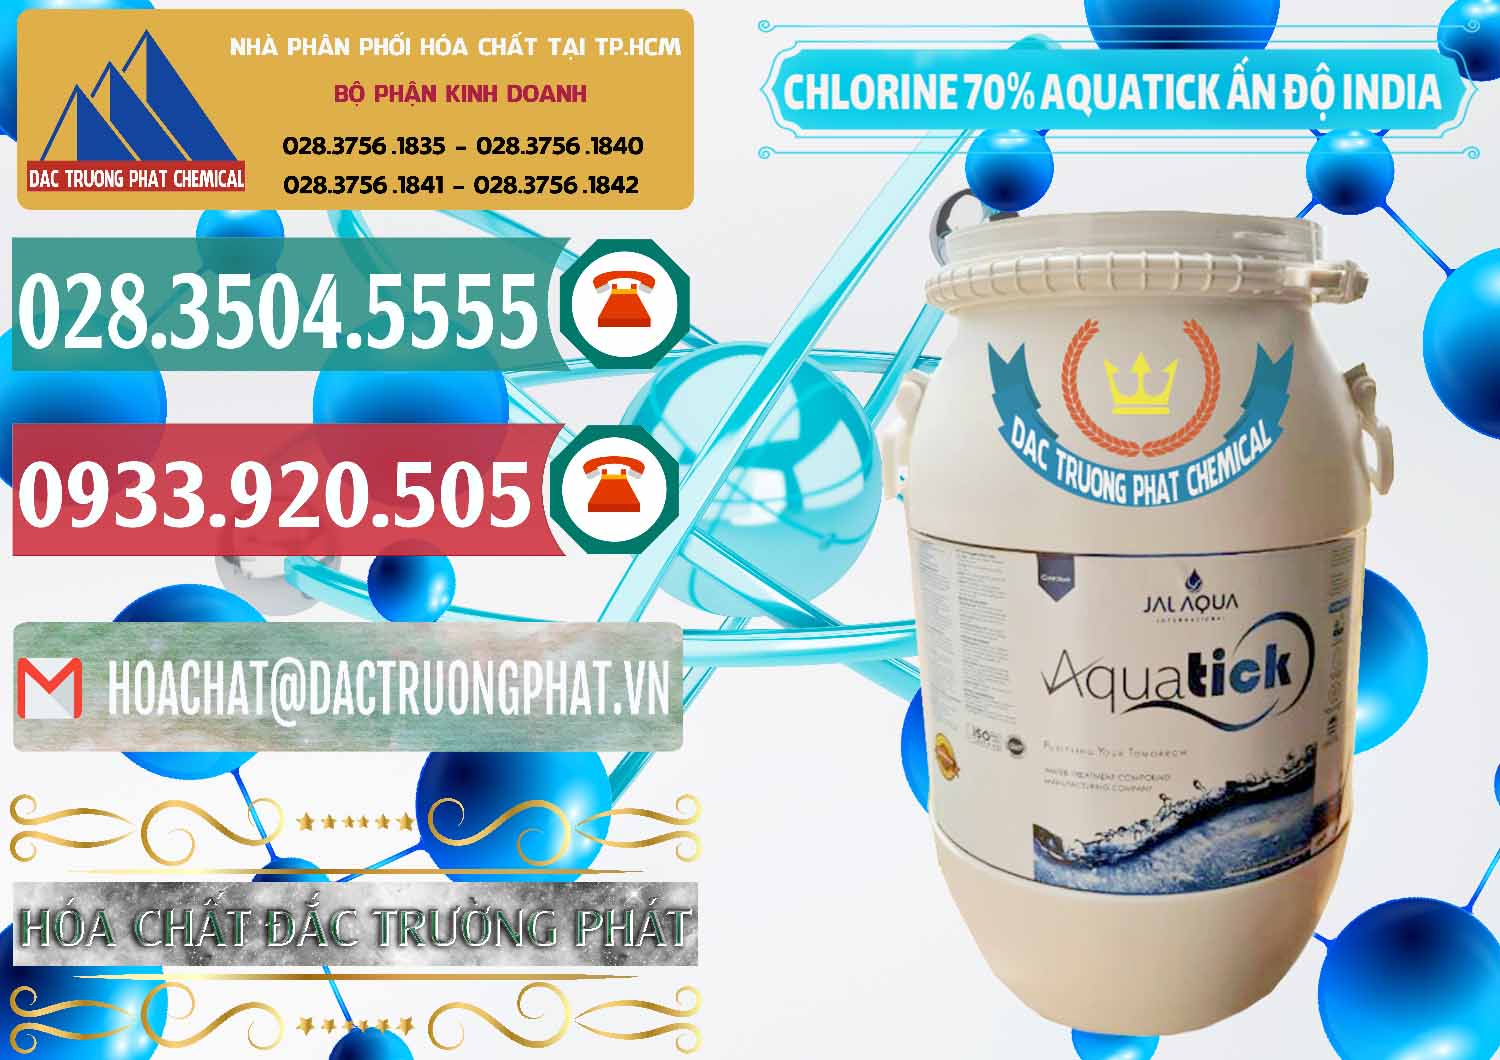 Cty chuyên cung ứng & bán Chlorine – Clorin 70% Aquatick Jal Aqua Ấn Độ India - 0215 - Nhà nhập khẩu - phân phối hóa chất tại TP.HCM - muabanhoachat.vn